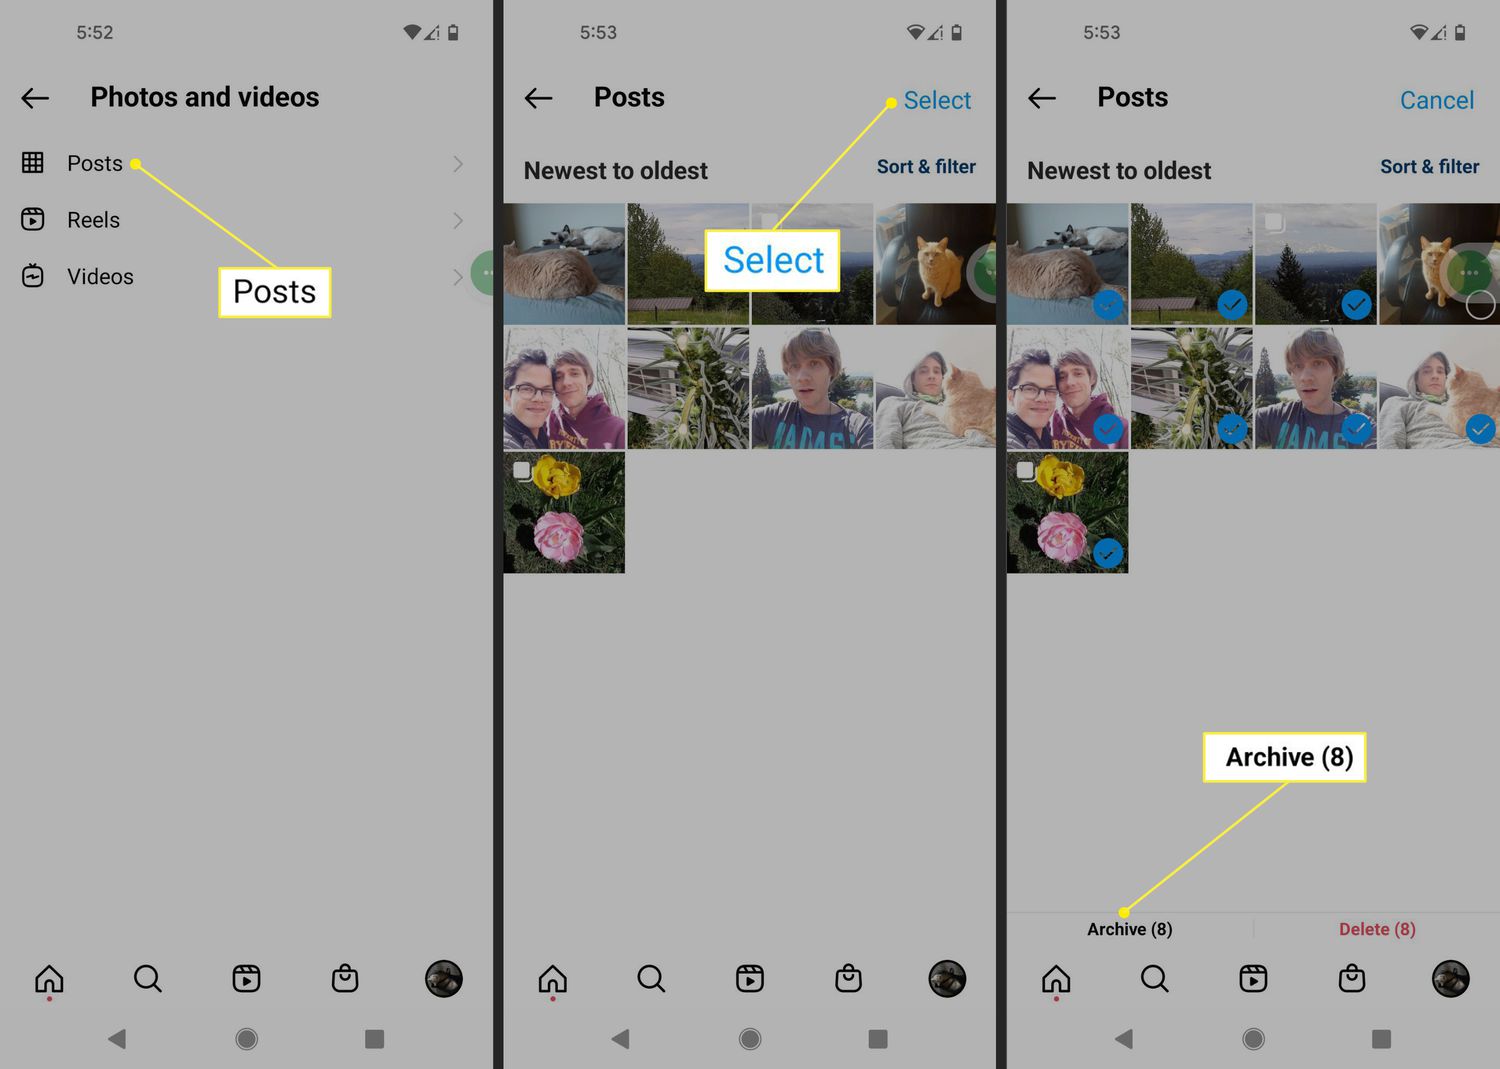 Αναρτήσεις, Επιλογή και Αρχειοθέτηση στην εφαρμογή Instagram